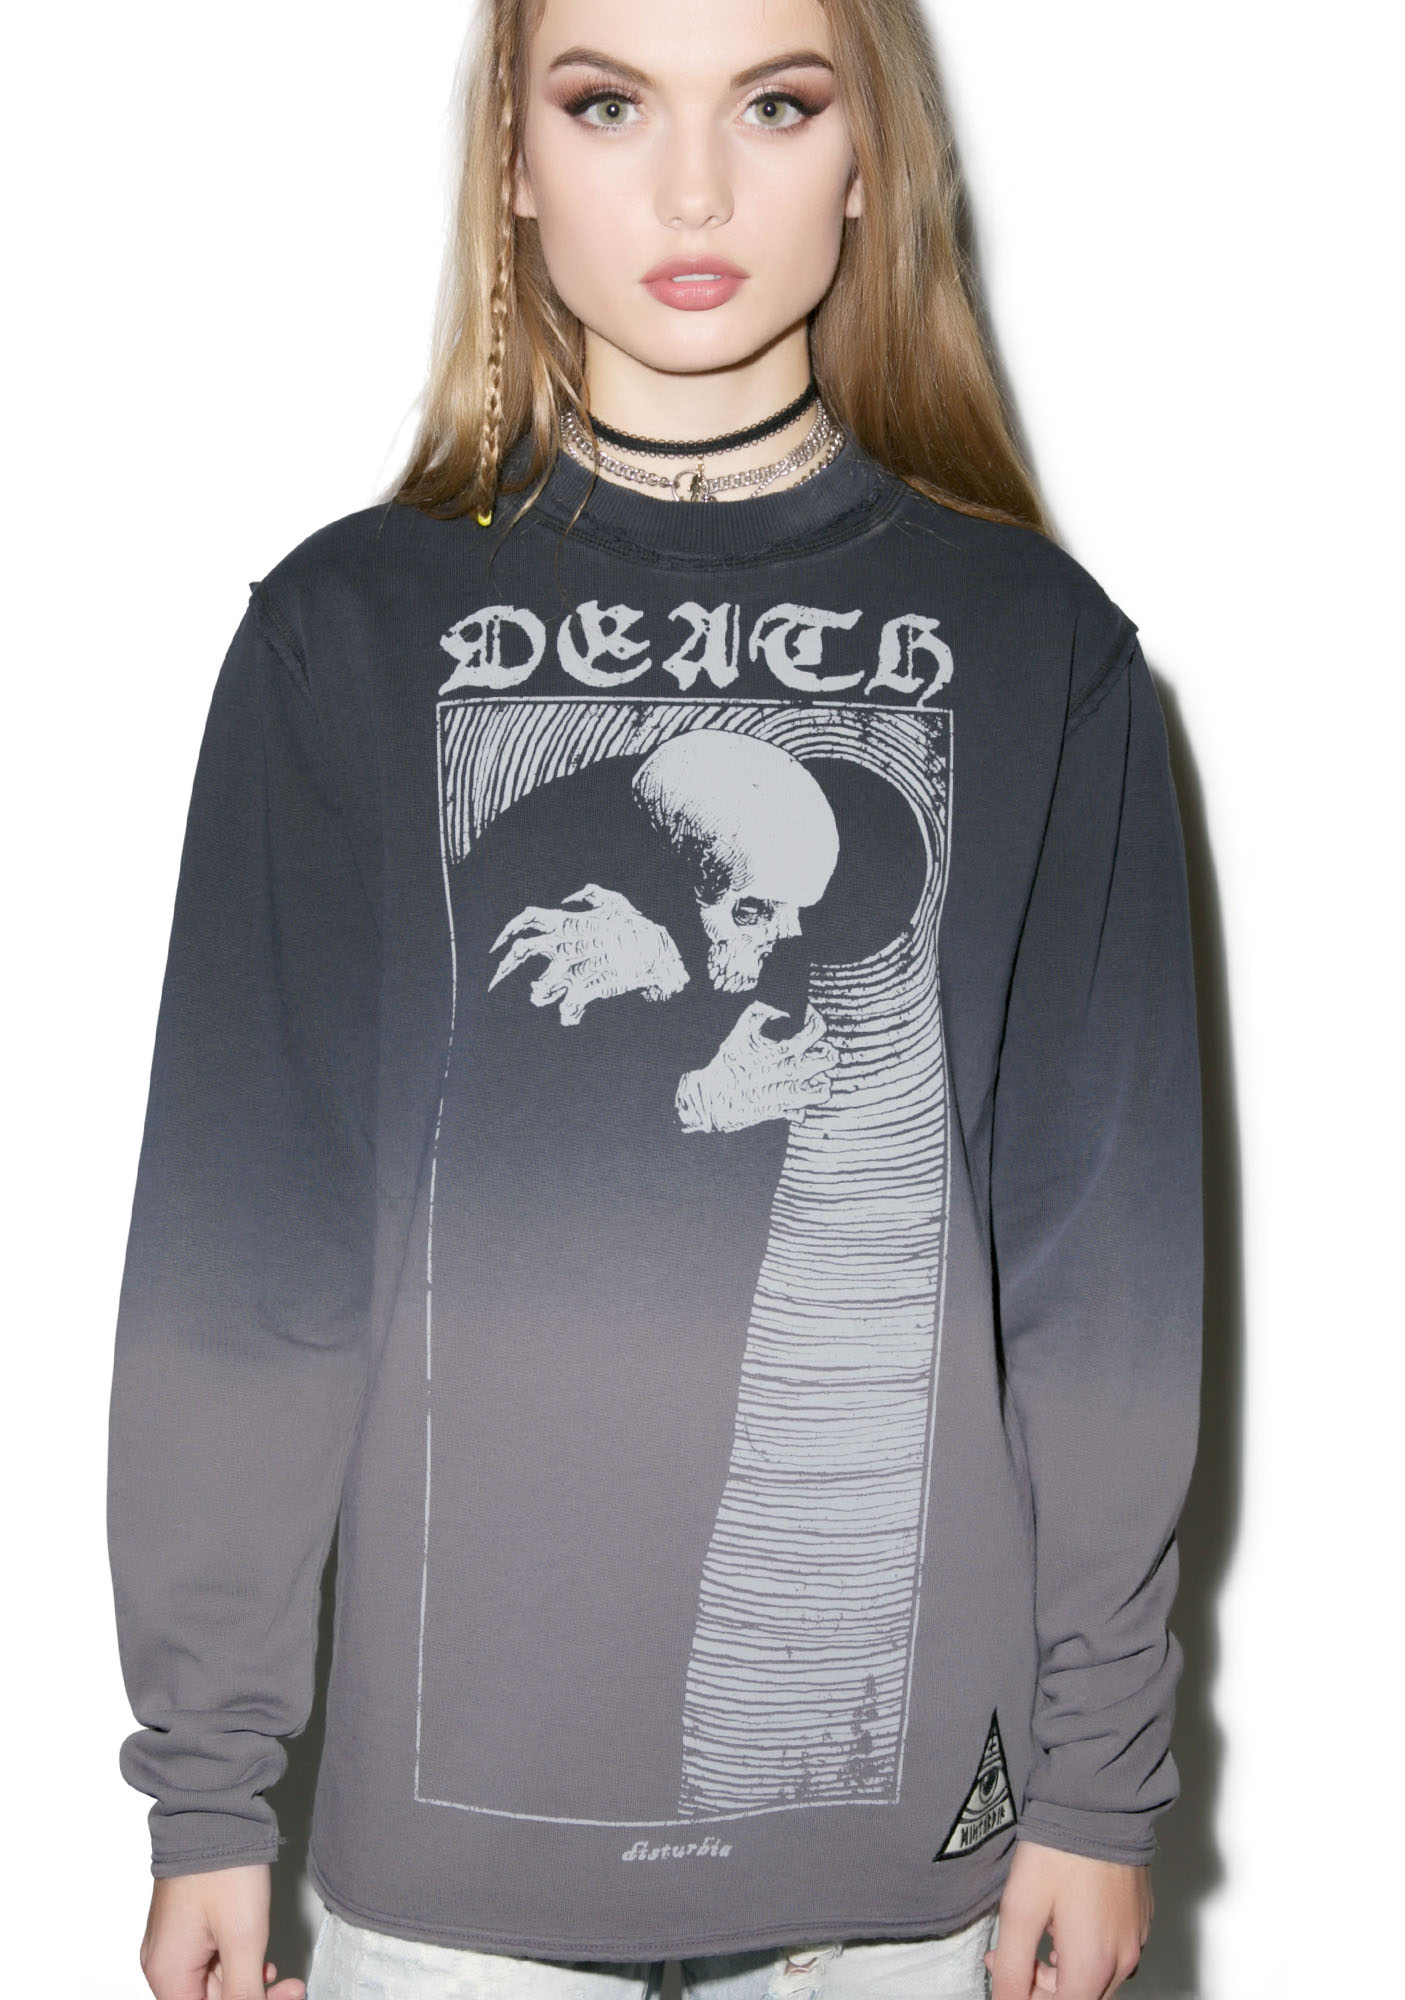 Disturbia Death Sweatshirt | Dolls Kill